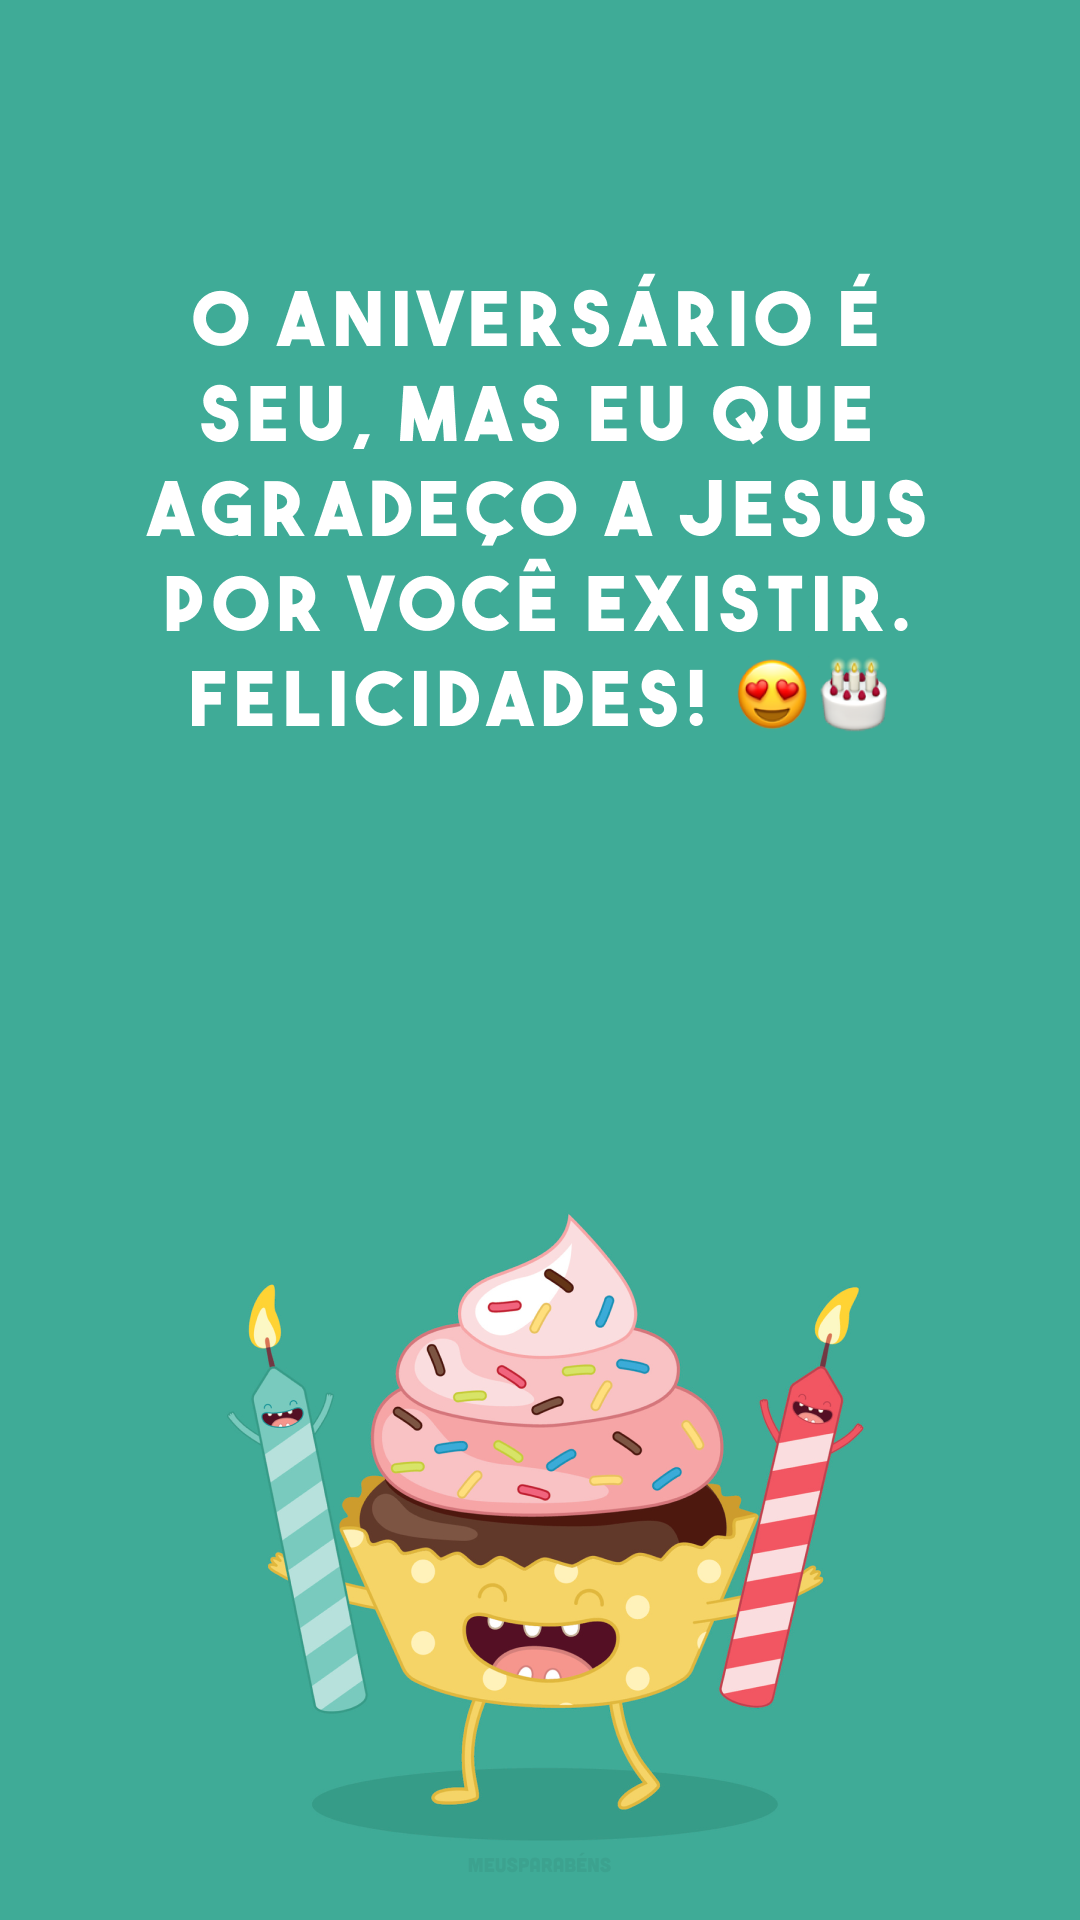 O aniversário é seu, mas eu que agradeço a Jesus por você existir. Felicidades! 😍🎂